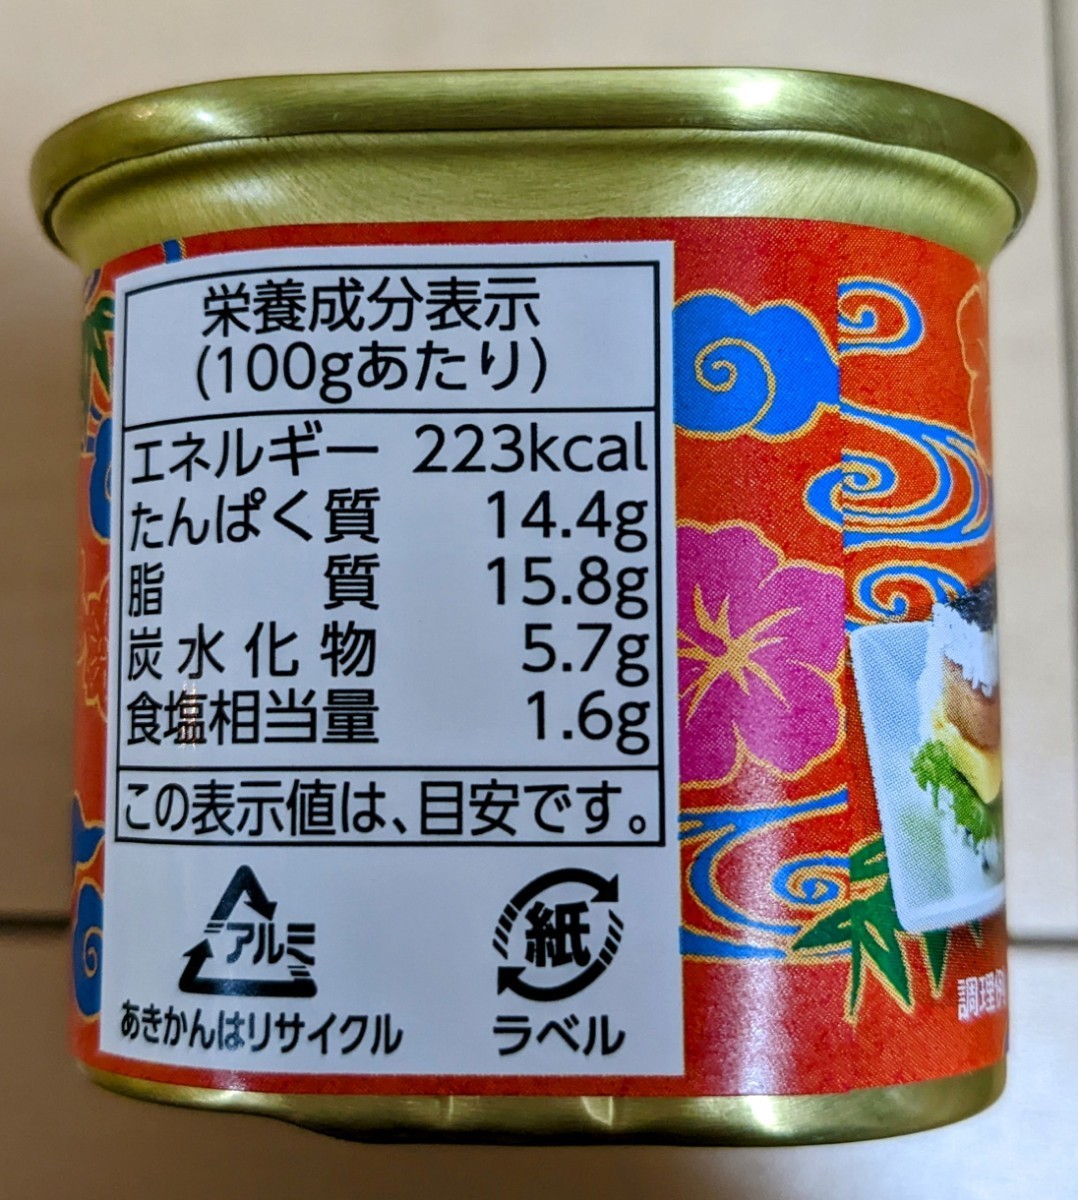 スパム ポークランチョンミート コープおきなわ限定12缶 沖縄県産原料